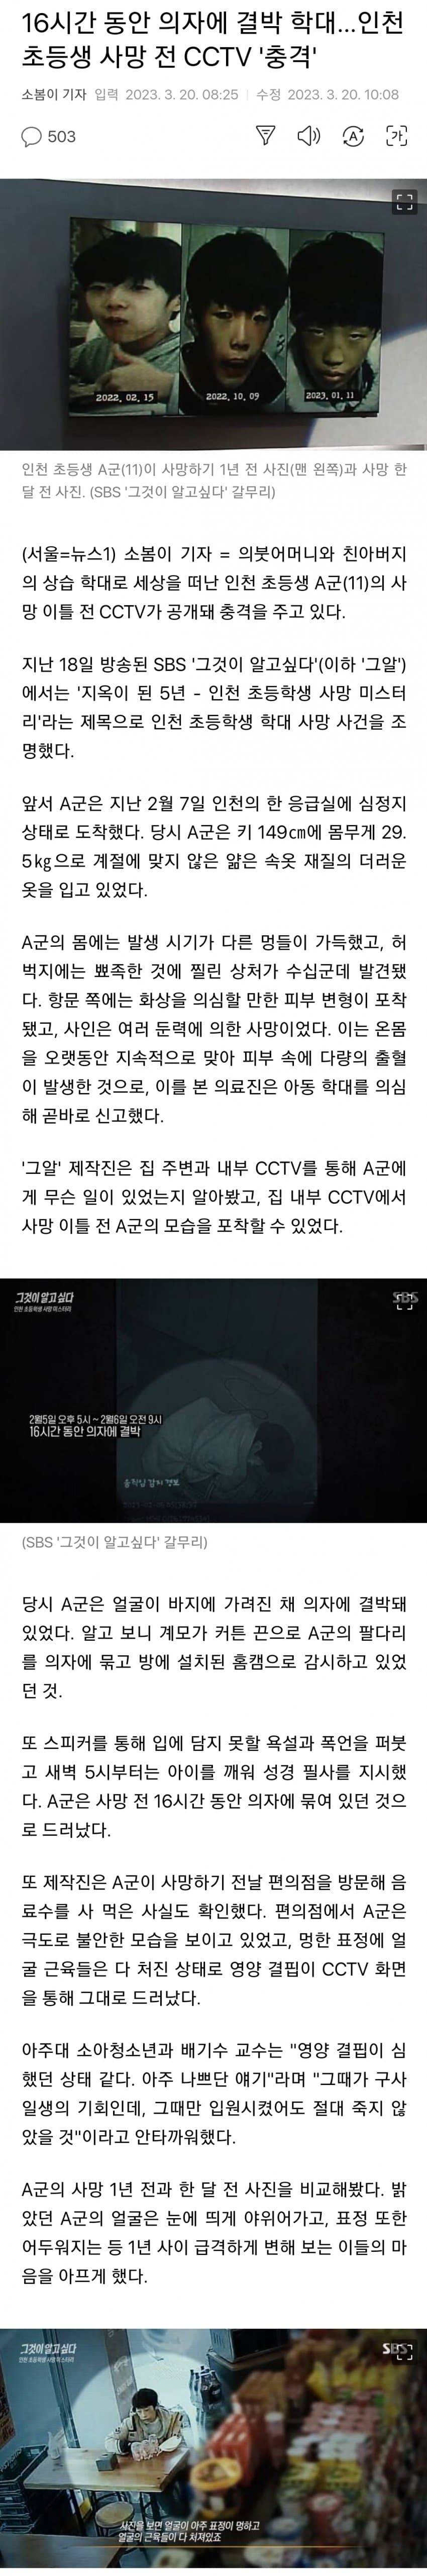 아동학대 당한 인천 초등생